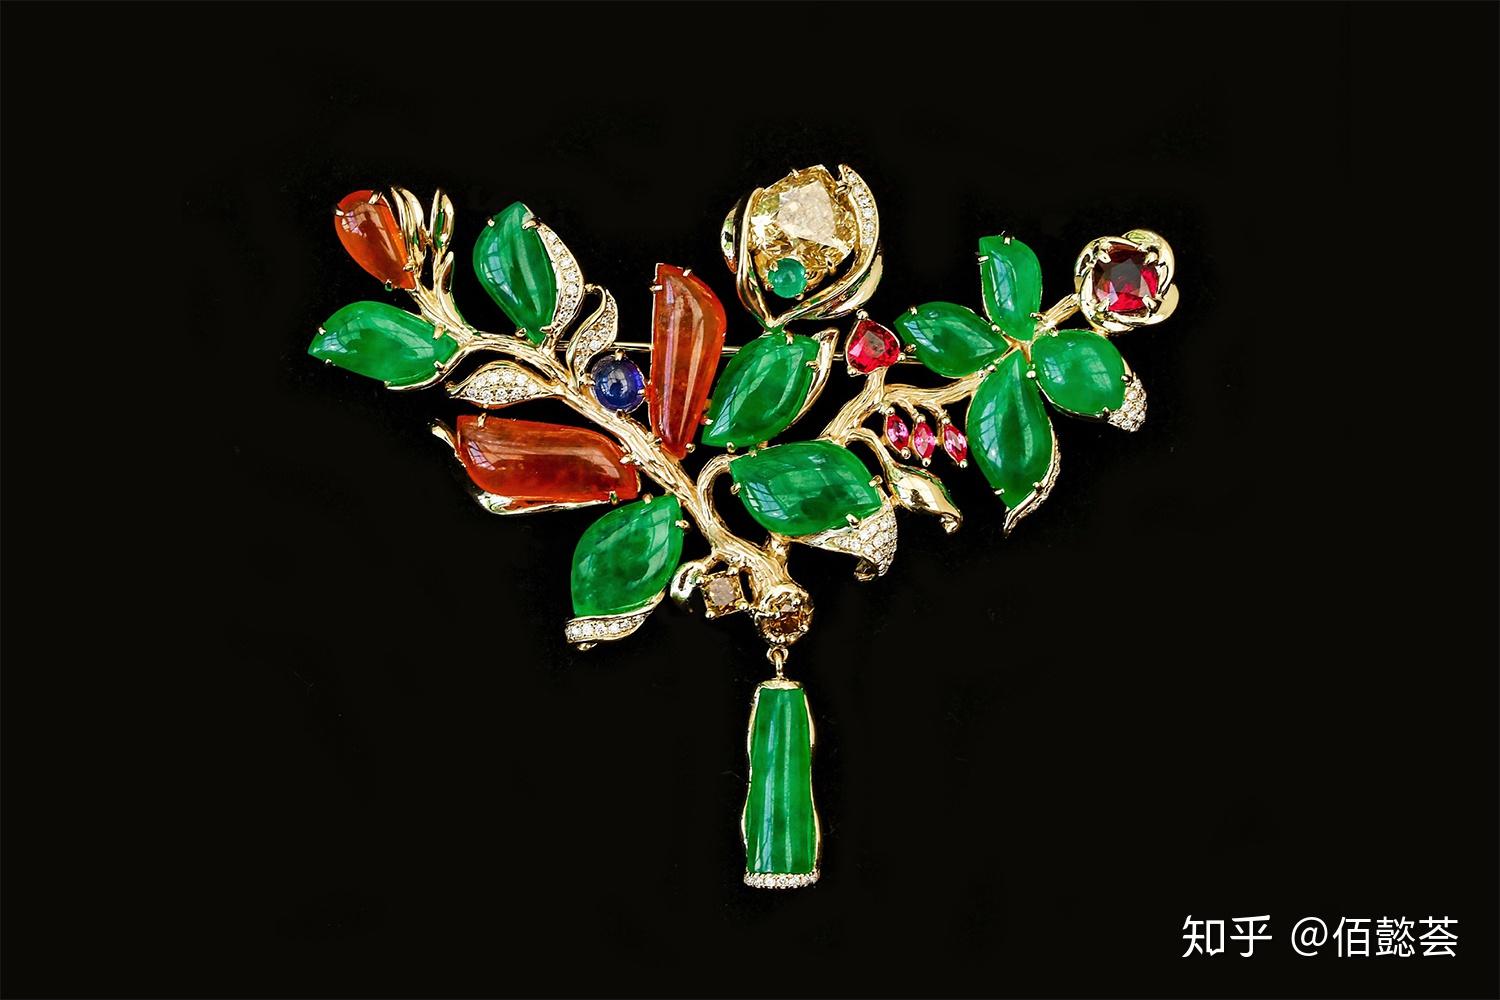 高清图|CINDY CHAO The Art Jewel大师系列极光蝴蝶胸针图片1|腕表之家-珠宝